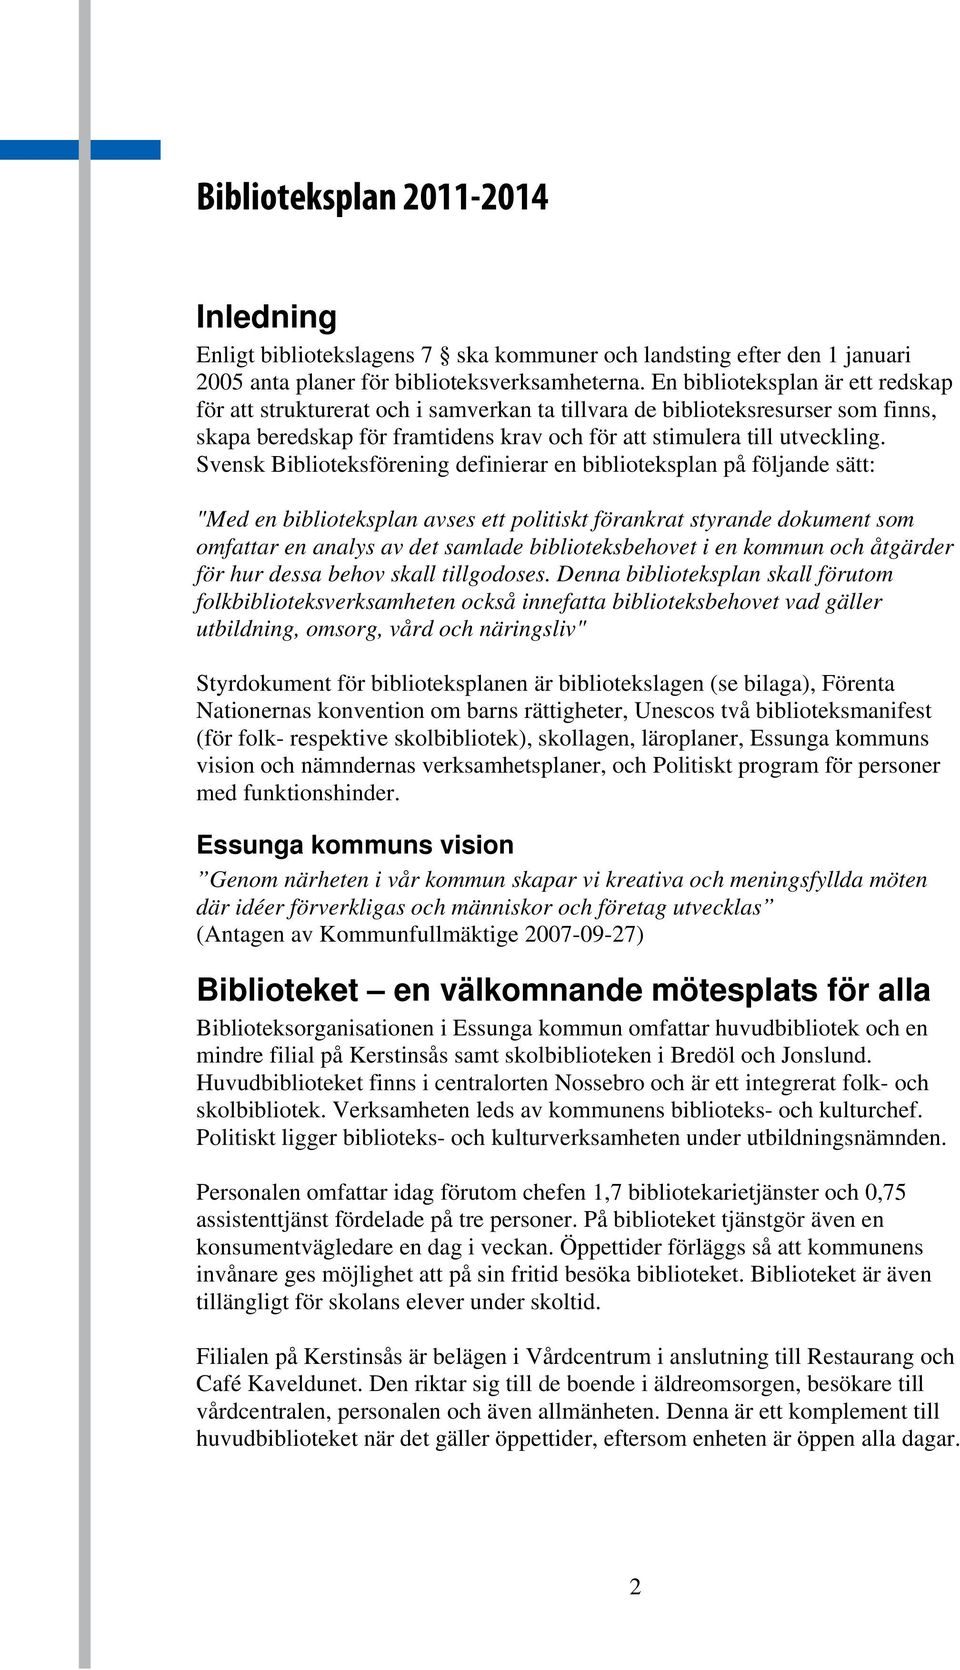 Svensk Biblioteksförening definierar en biblioteksplan på följande sätt: "Med en biblioteksplan avses ett politiskt förankrat styrande dokument som omfattar en analys av det samlade biblioteksbehovet